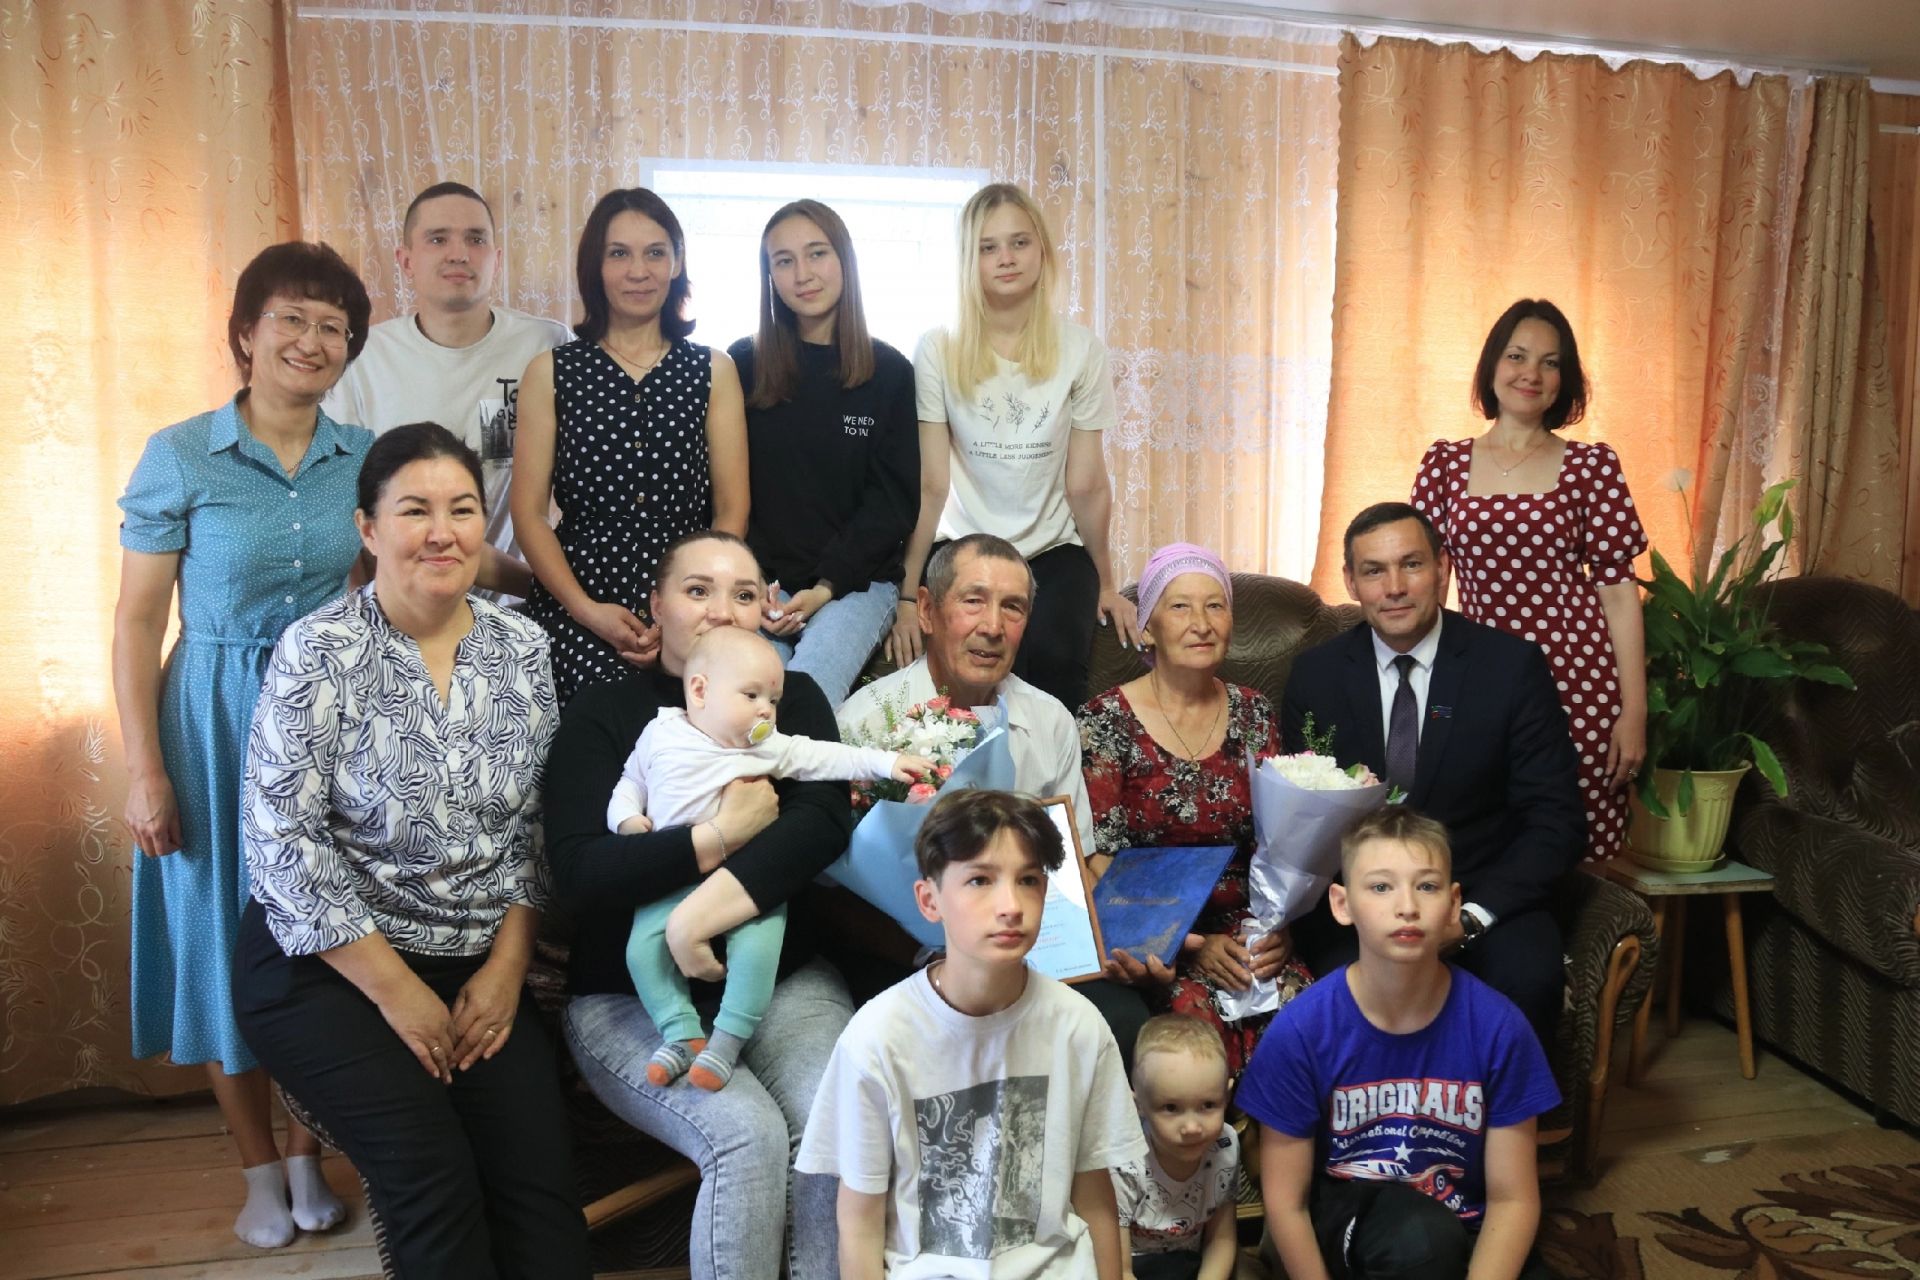 Таусия Миргазияновна и Наиль Кавиевич Фаттаховы из Ютазинского района отмечают золотой юбилей совместной жизни